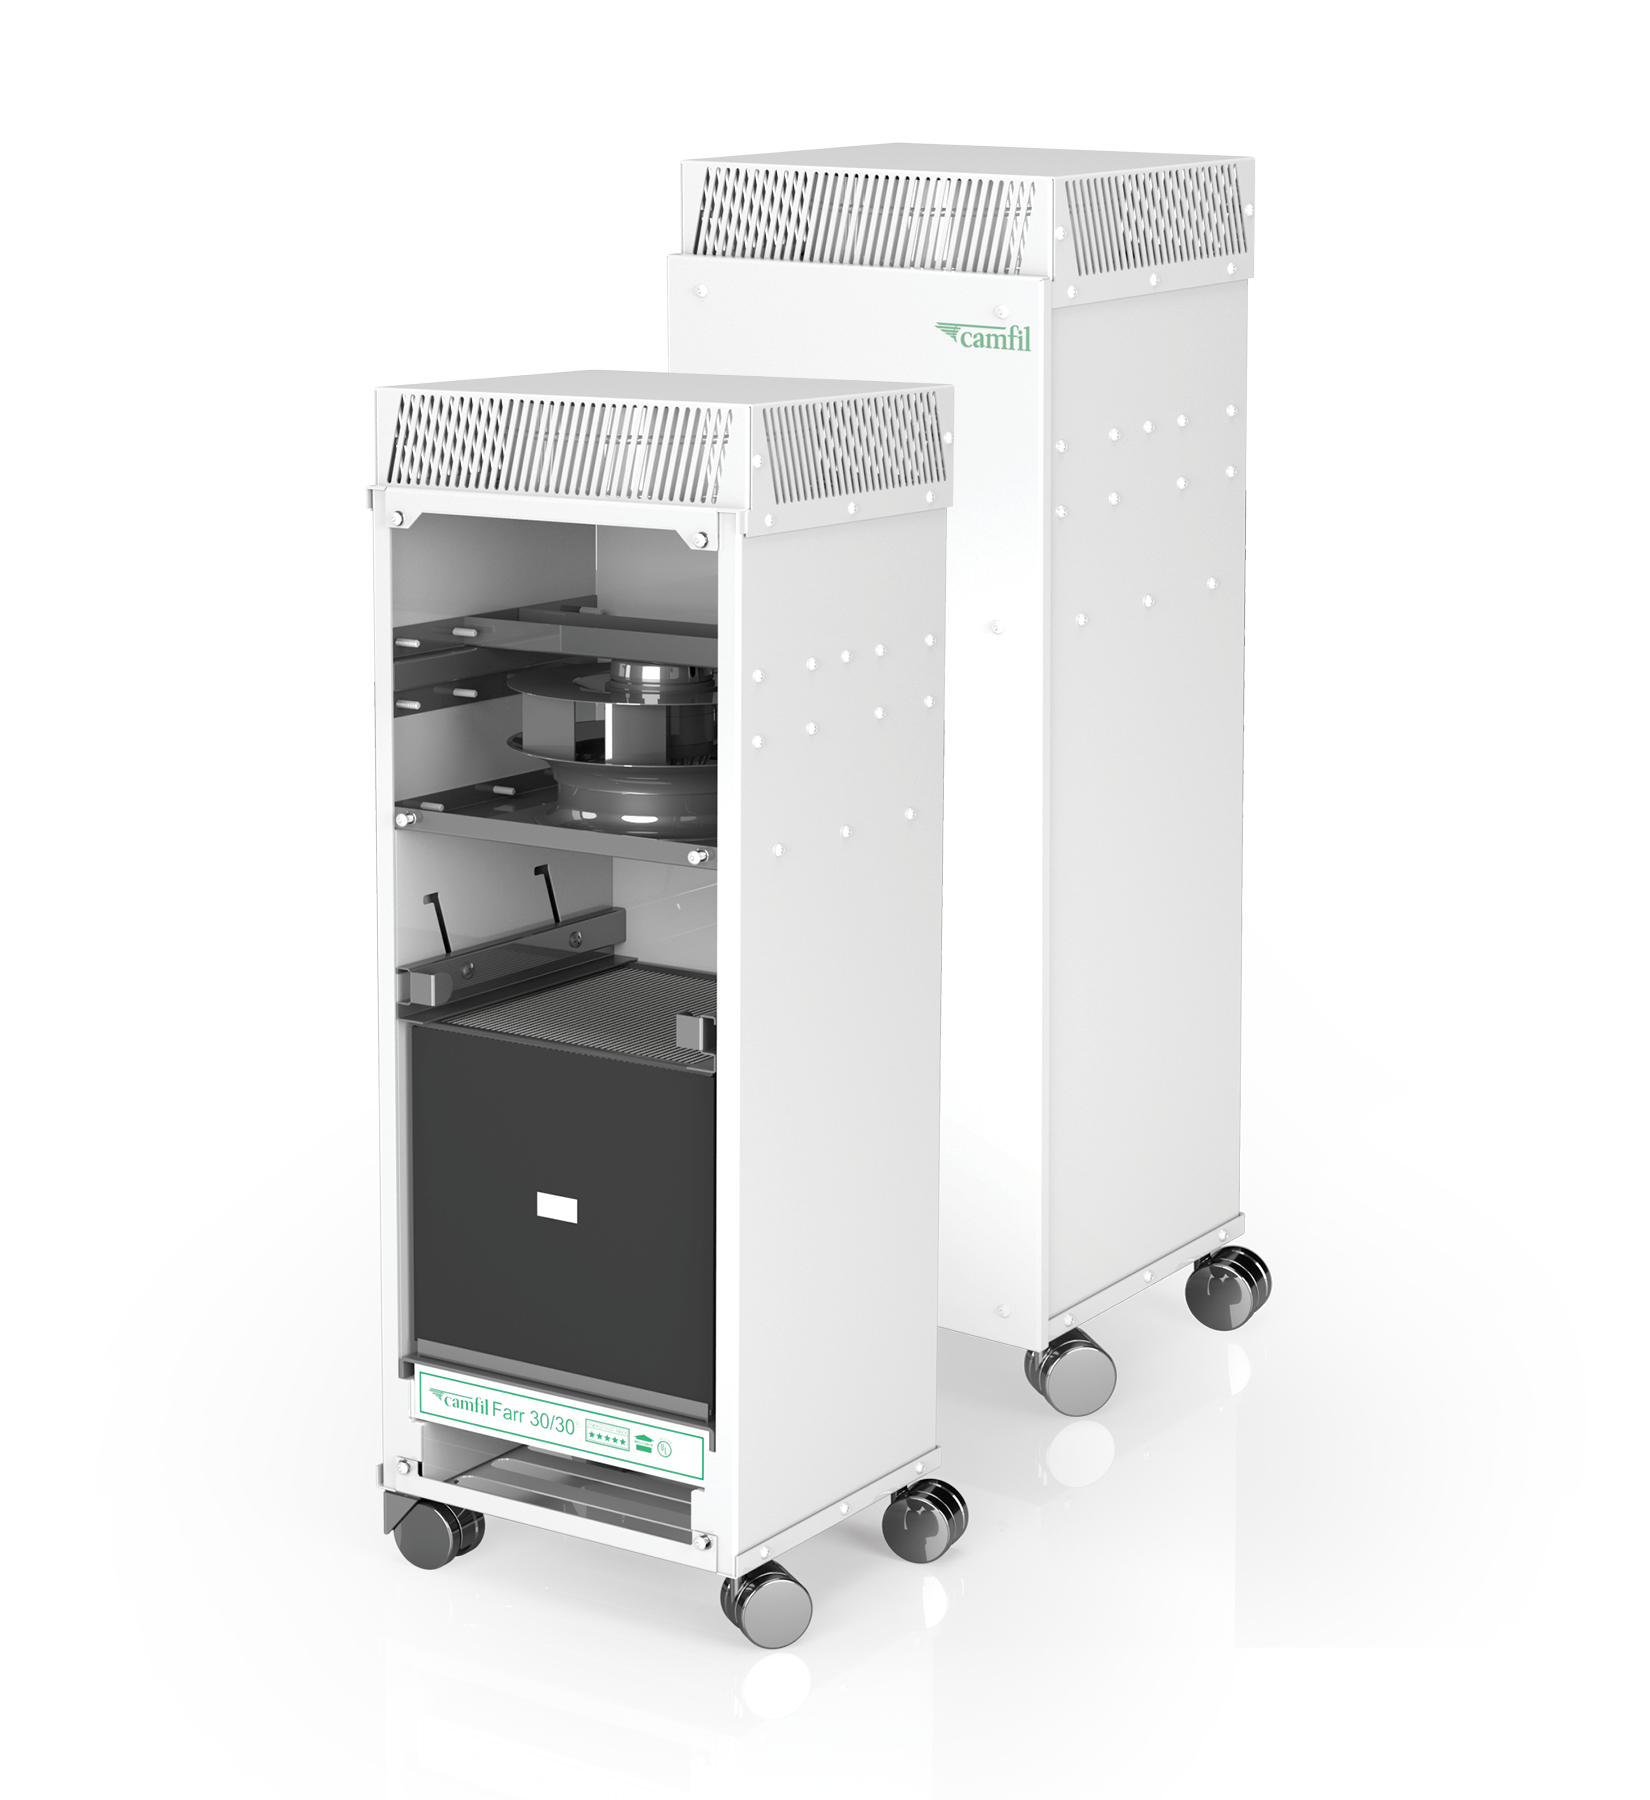 Imagen doble, interna y externa, del purificador de aire CC500 ideal para hospitales con filtro HEPA